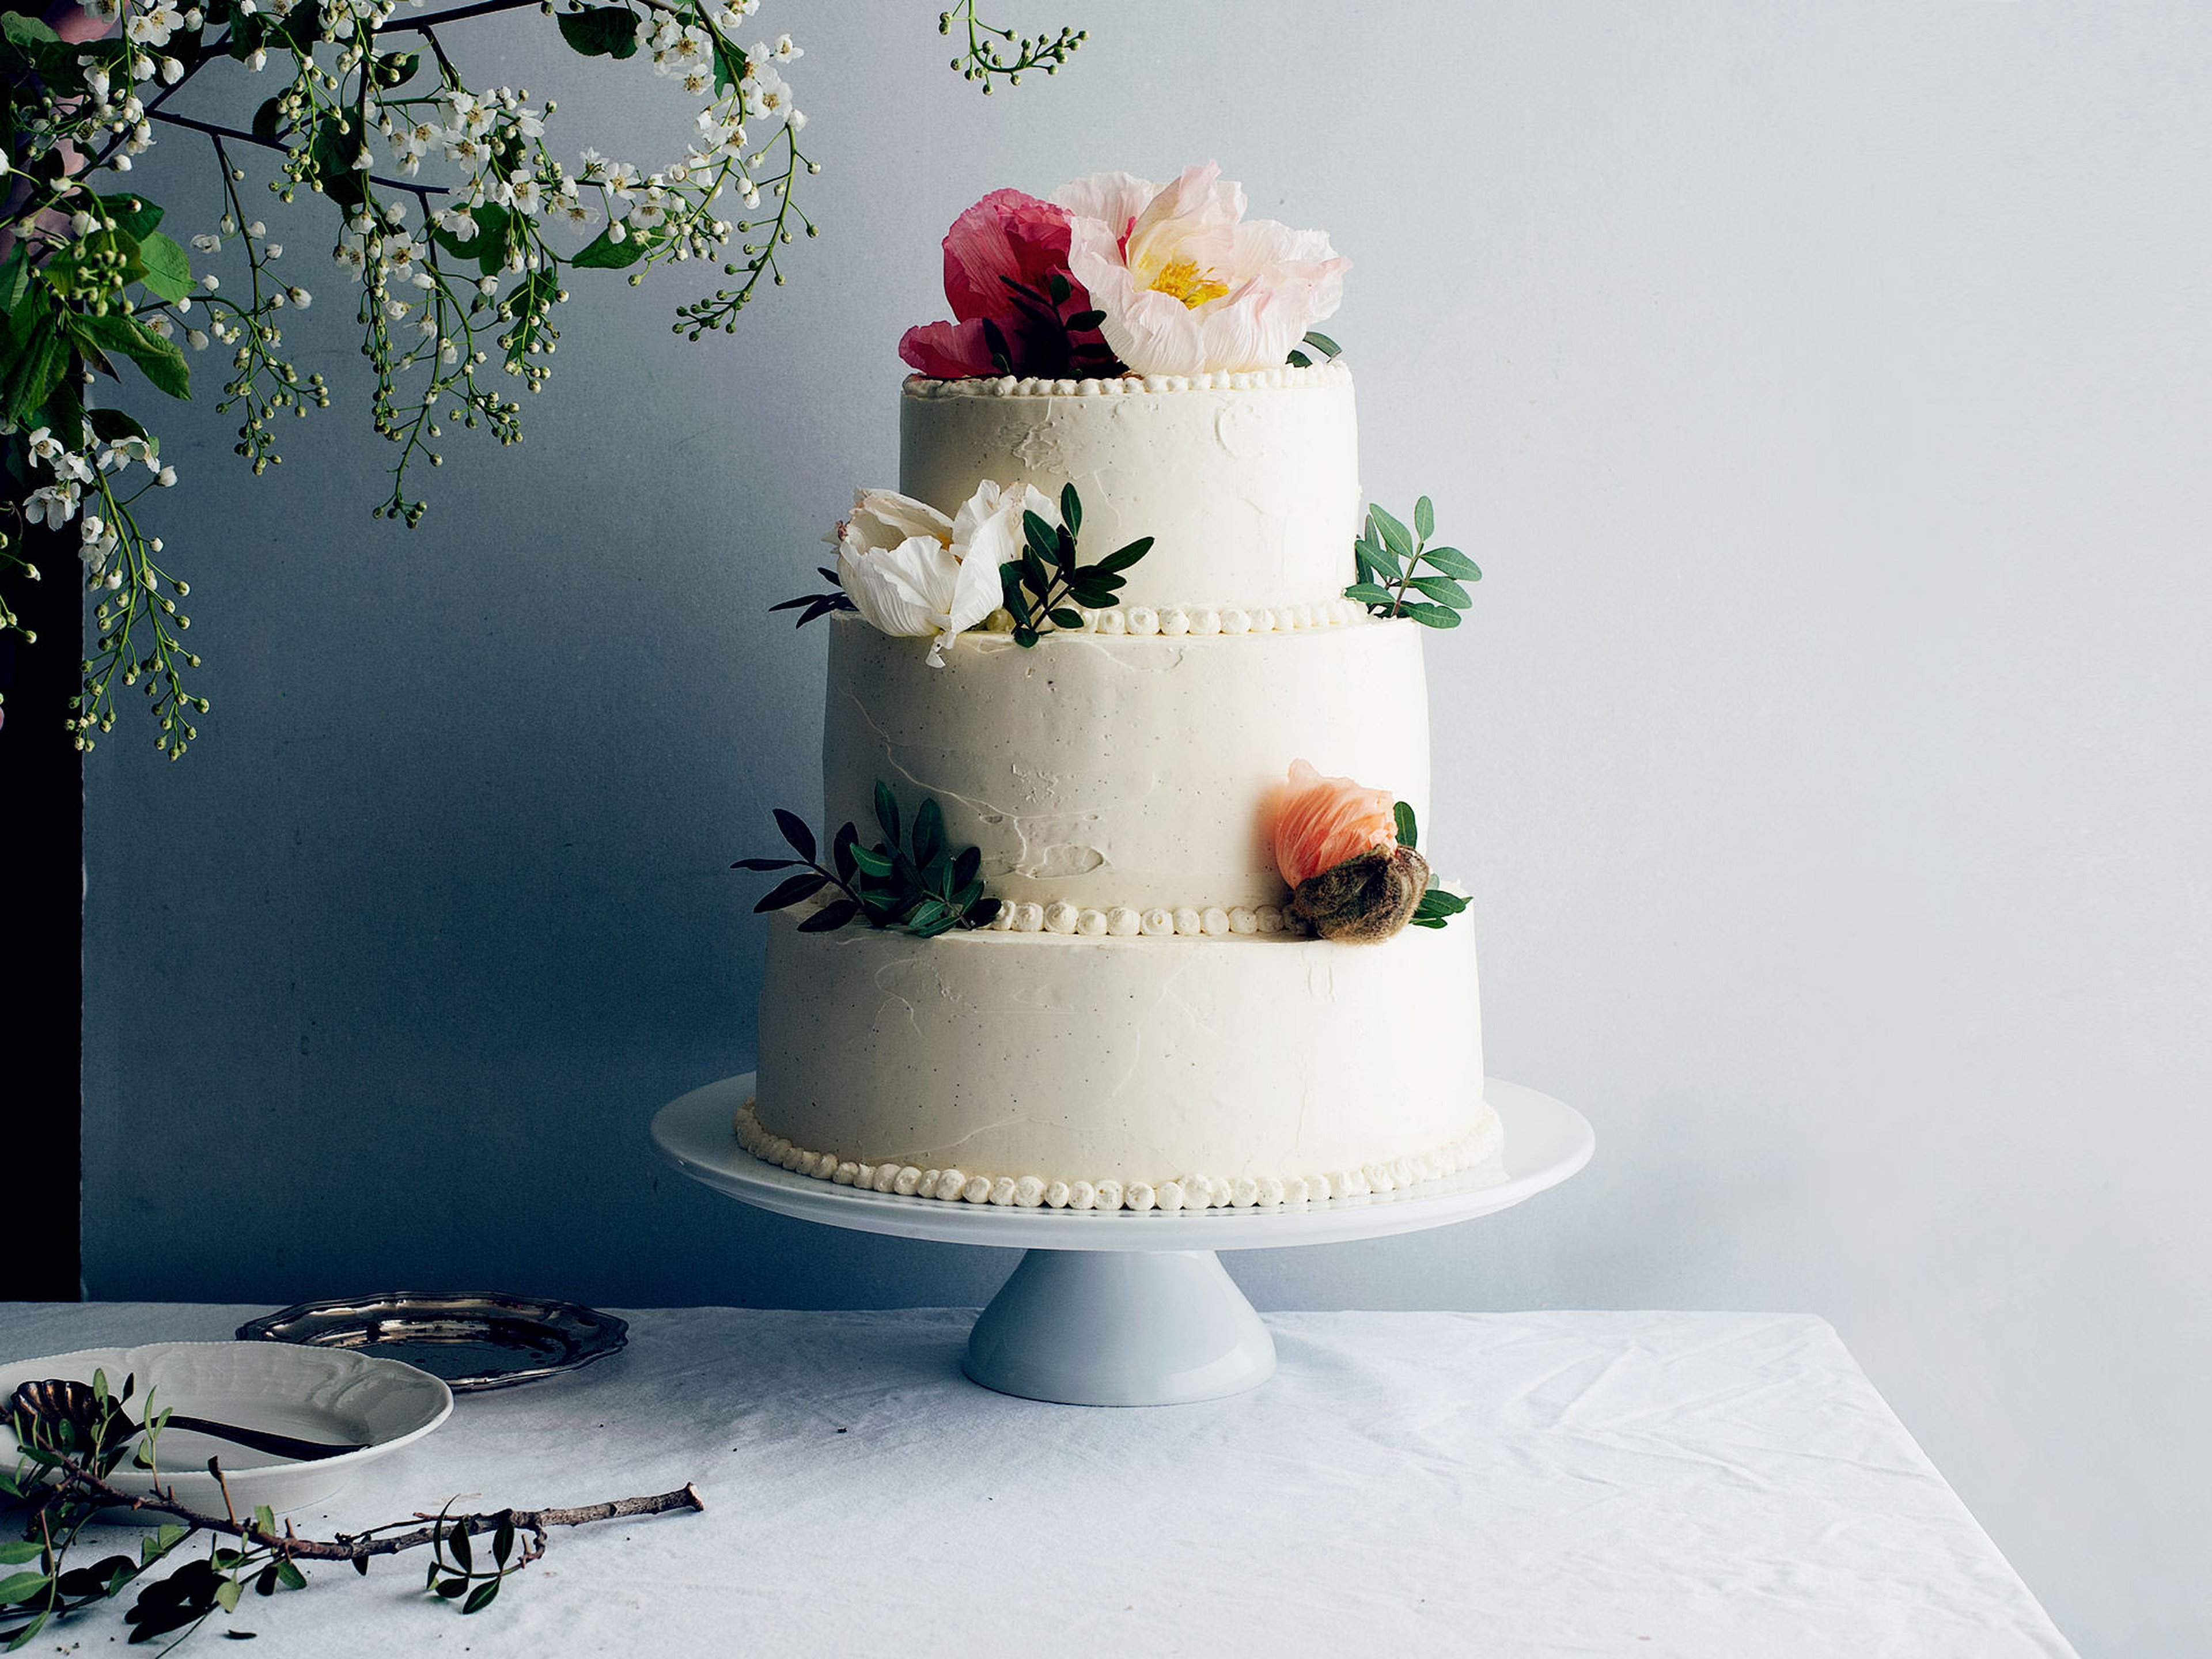 A DIY Wedding Cake, Made Easy